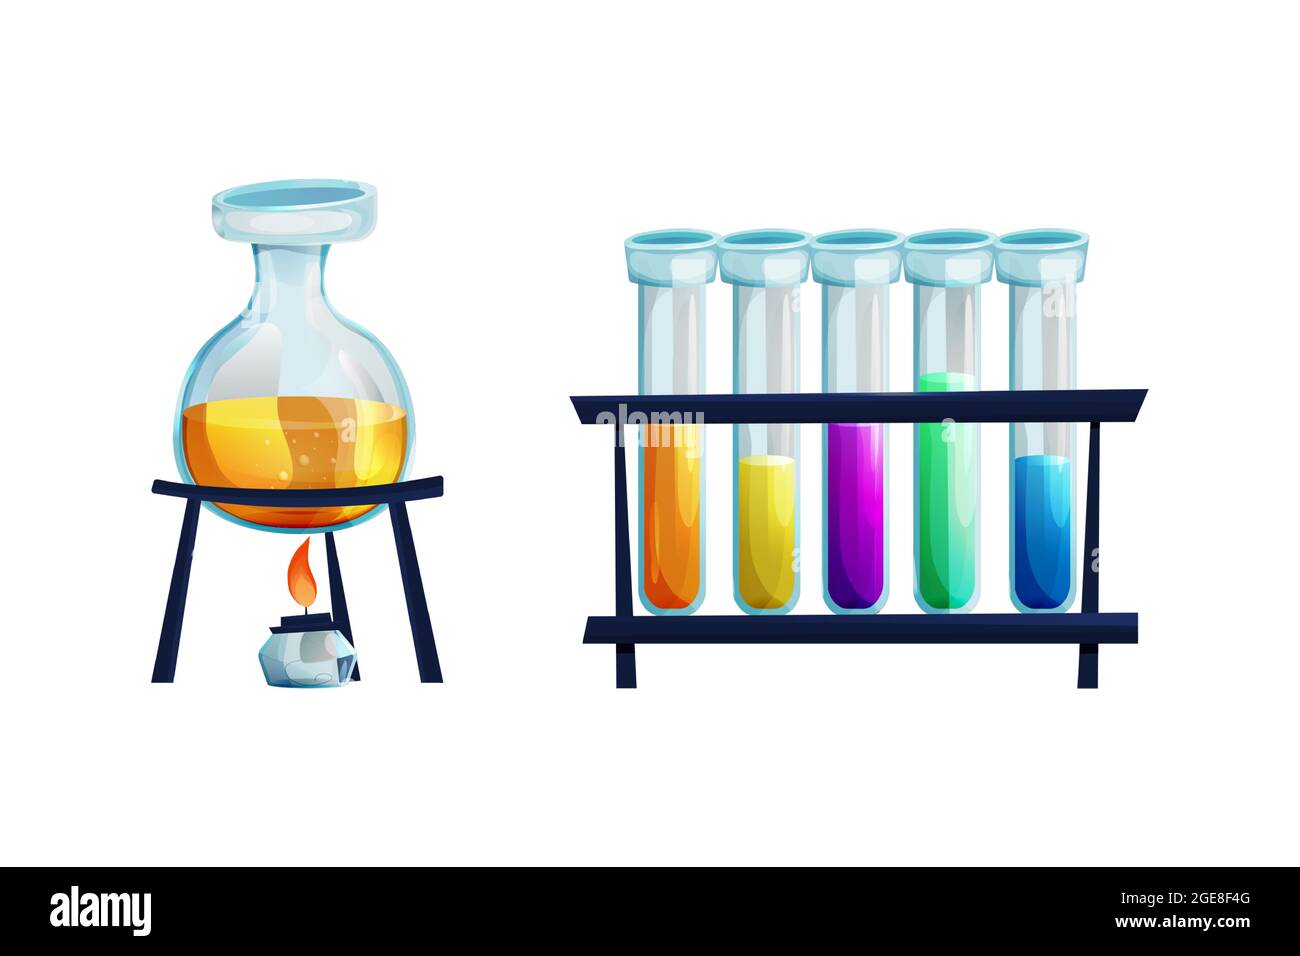 Kit de laboratoire avec flacon en verre avec brûleur, tubes à essai avec  recherche en chimie liquide dans le style de dessin animé isolé sur fond  blanc. Alchimie, équipement de laboratoire d'étude. .